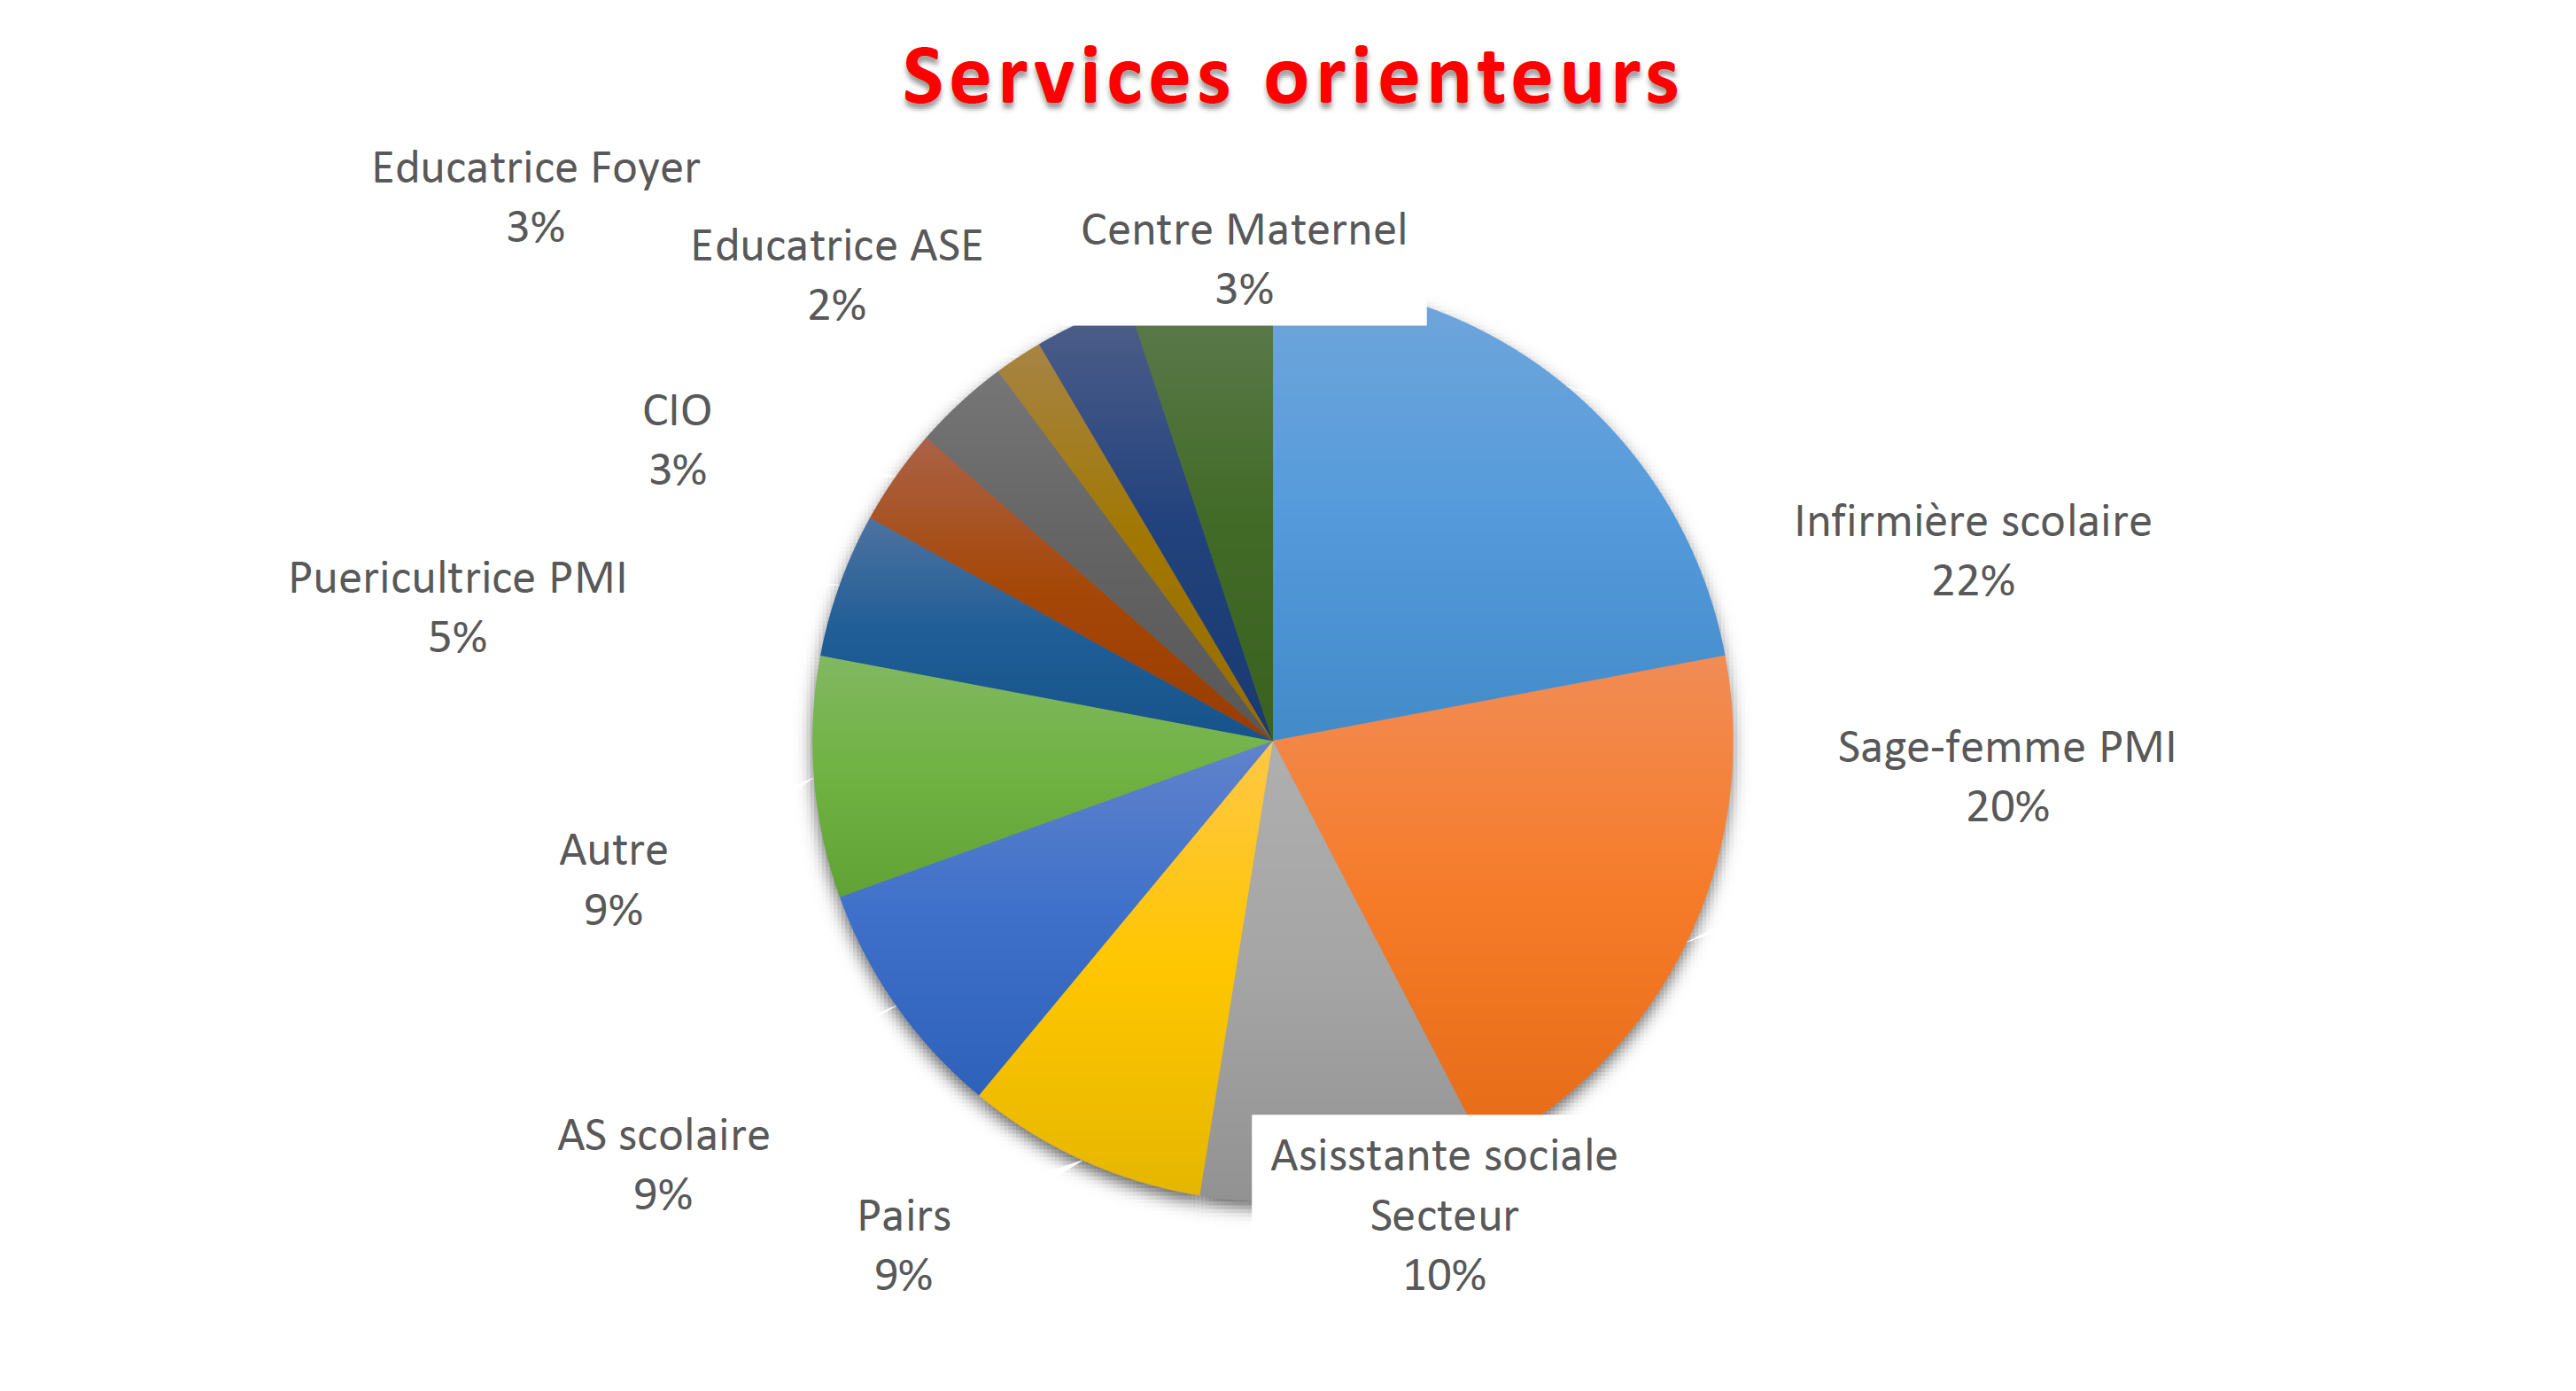 Services orienteurs